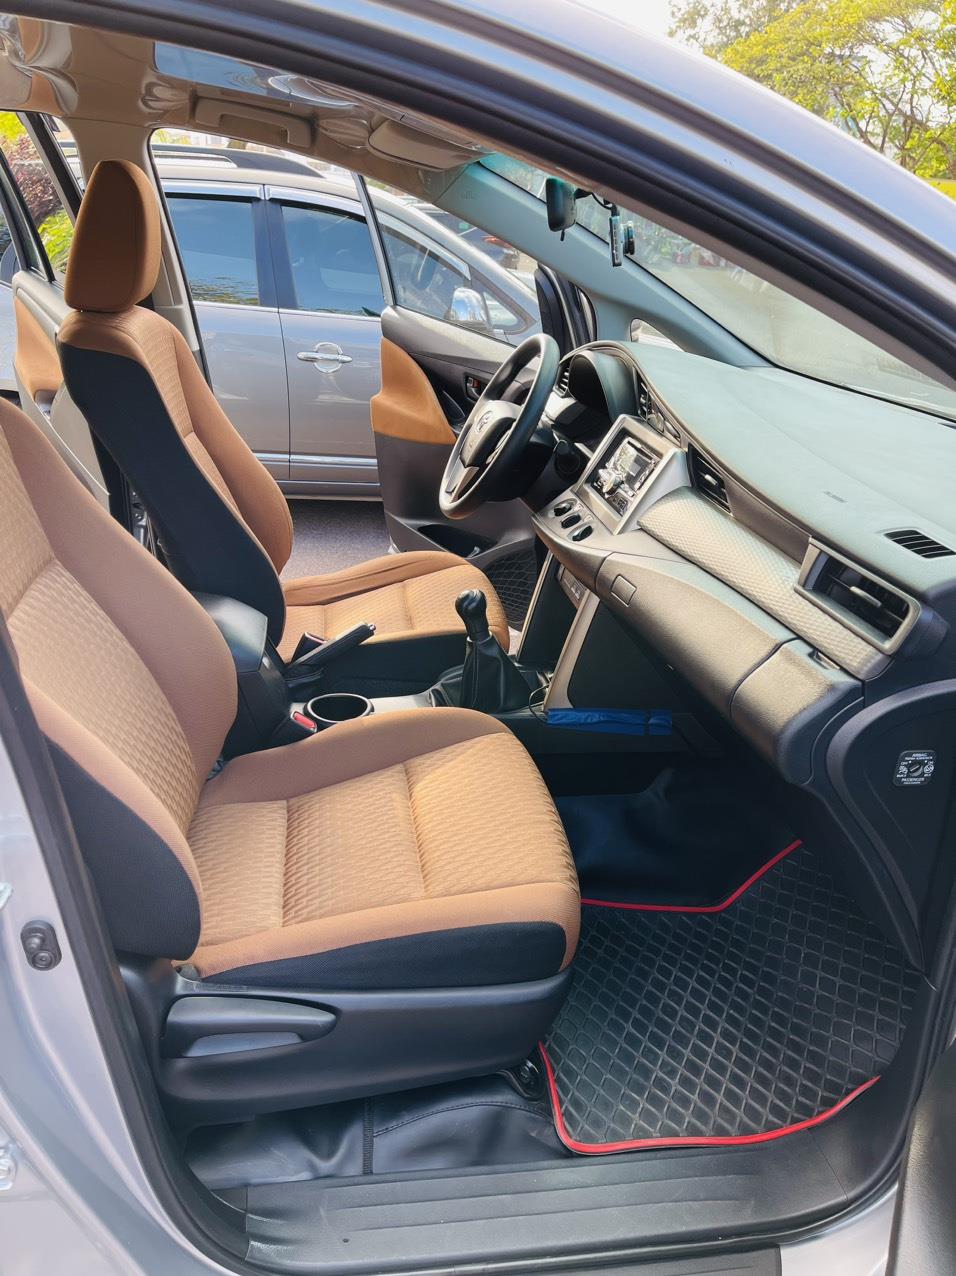 UUsed Car Dealer Trimap đang bán; Toyota Innova E 2.0 sx 2019, đăng ký 2020 một chủ mua mới đầu. 407716